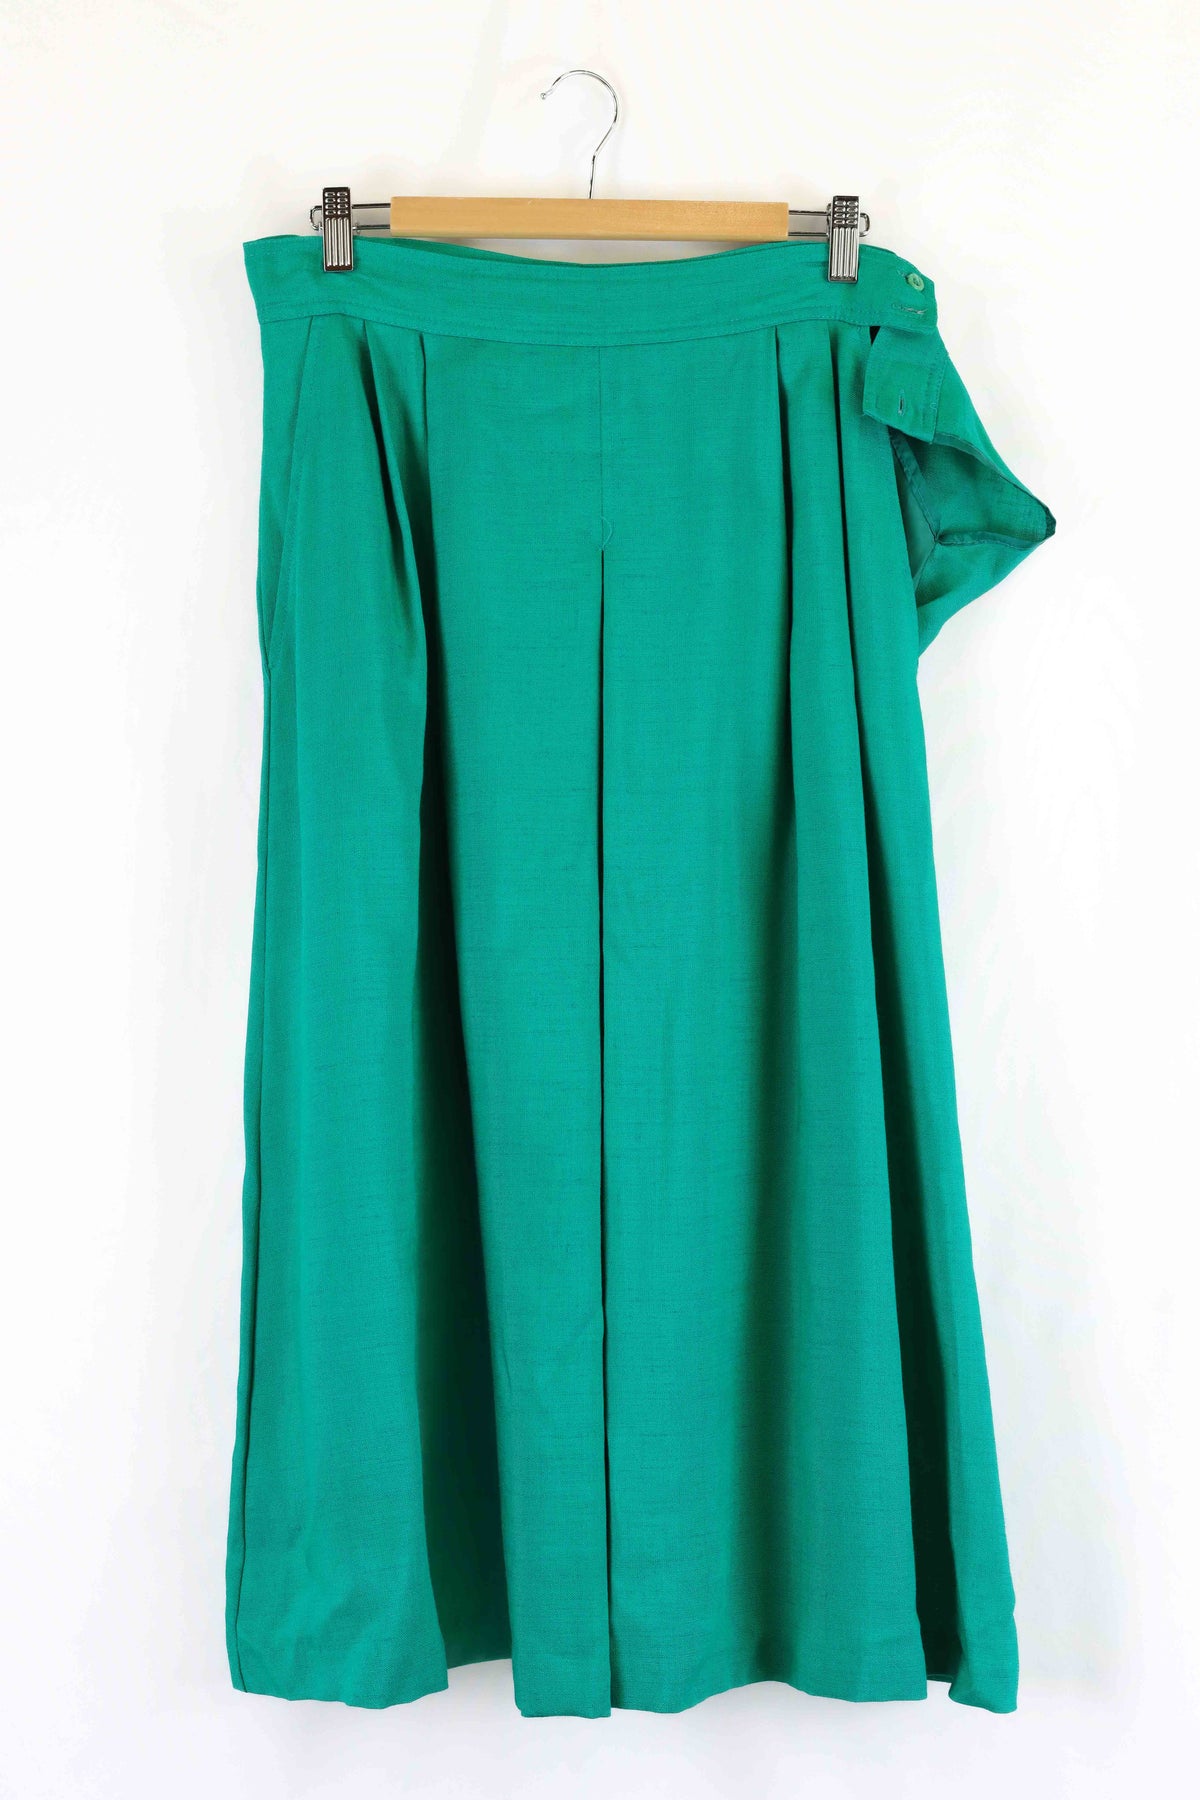 Fletcher Jones Green Linen Skirt 16